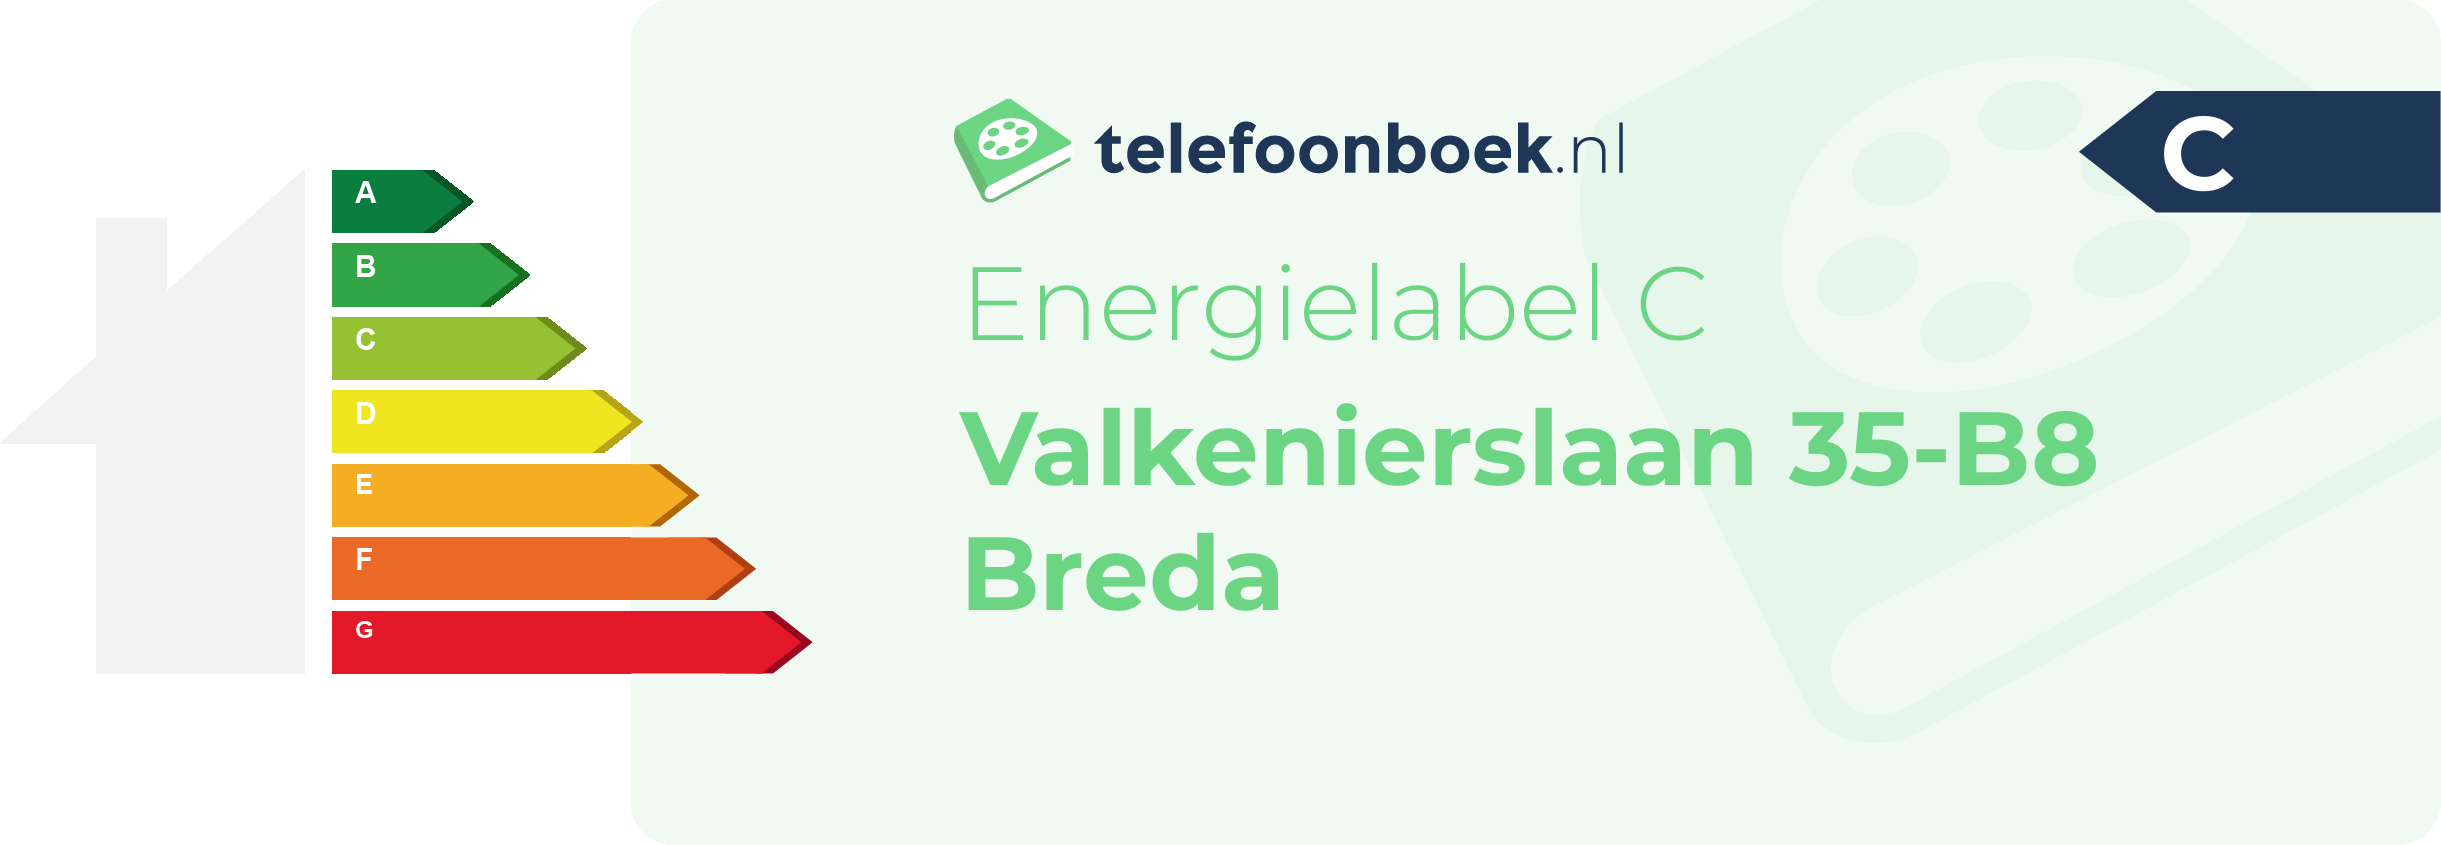 Energielabel Valkenierslaan 35-B8 Breda